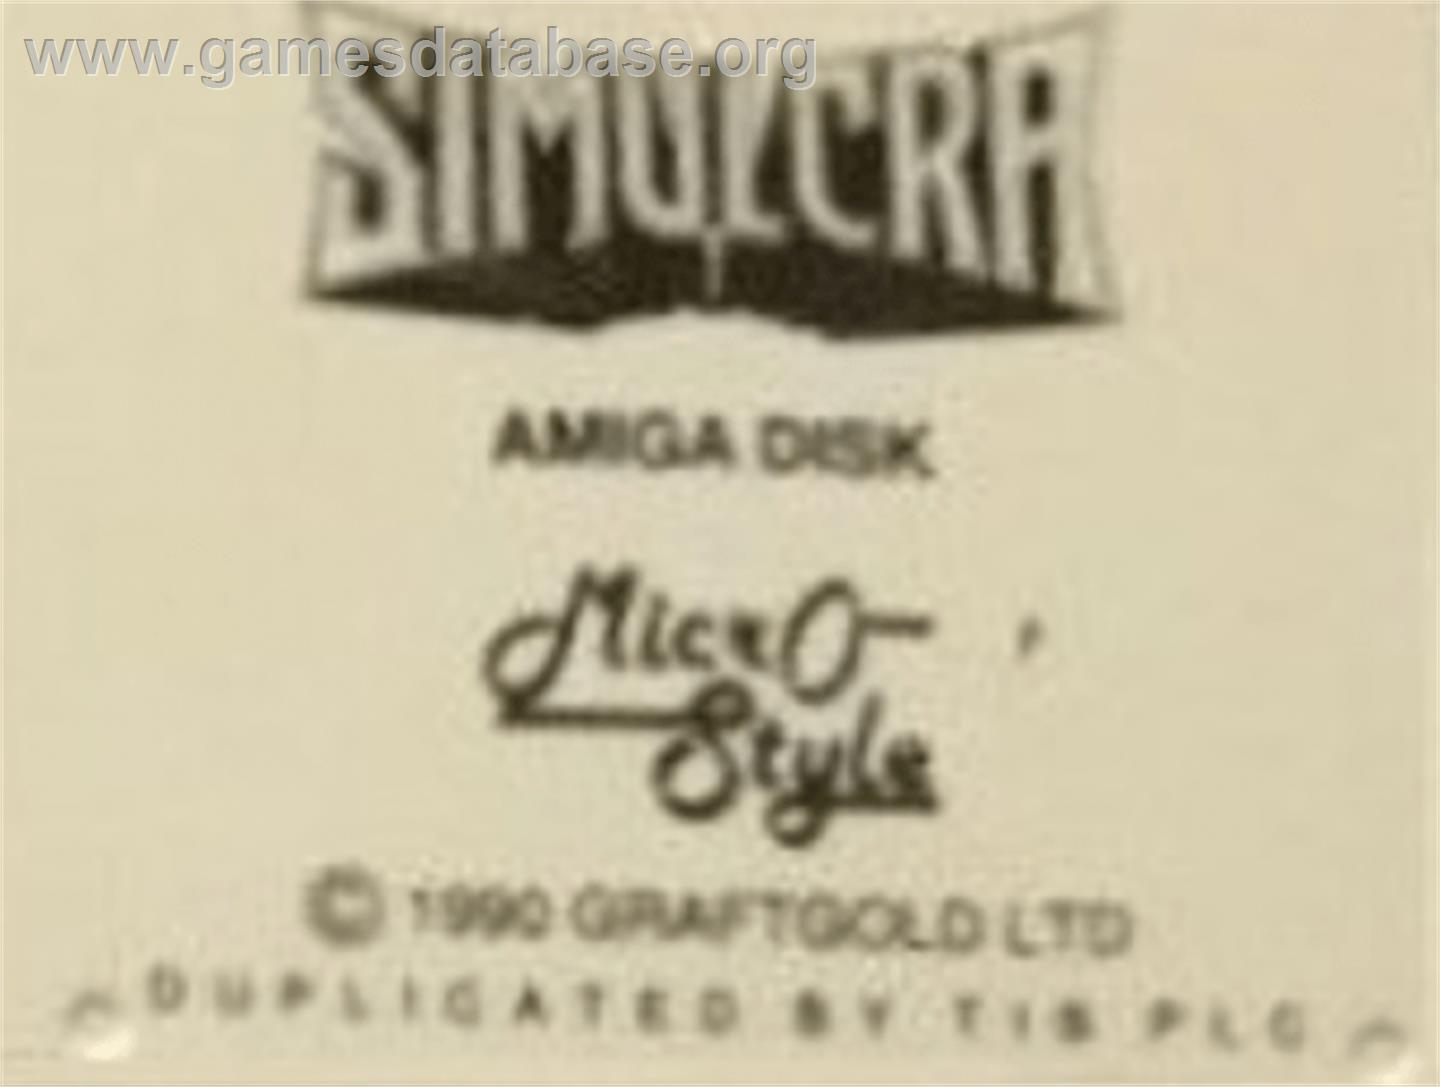 Simulcra - Commodore Amiga - Artwork - Cartridge Top